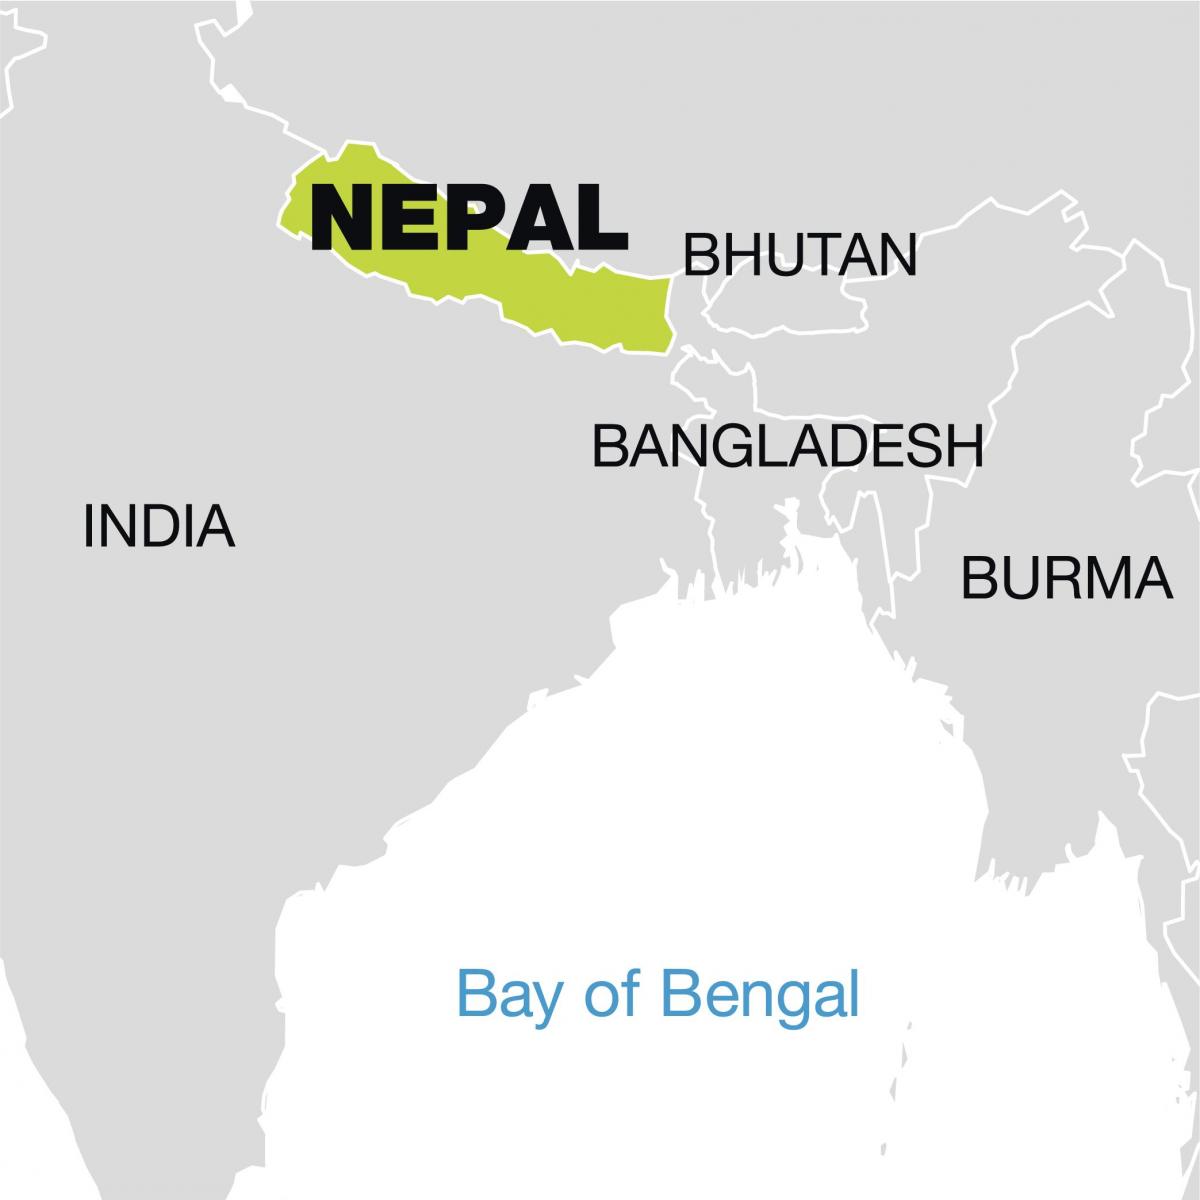 карта мира, показывающая Непал